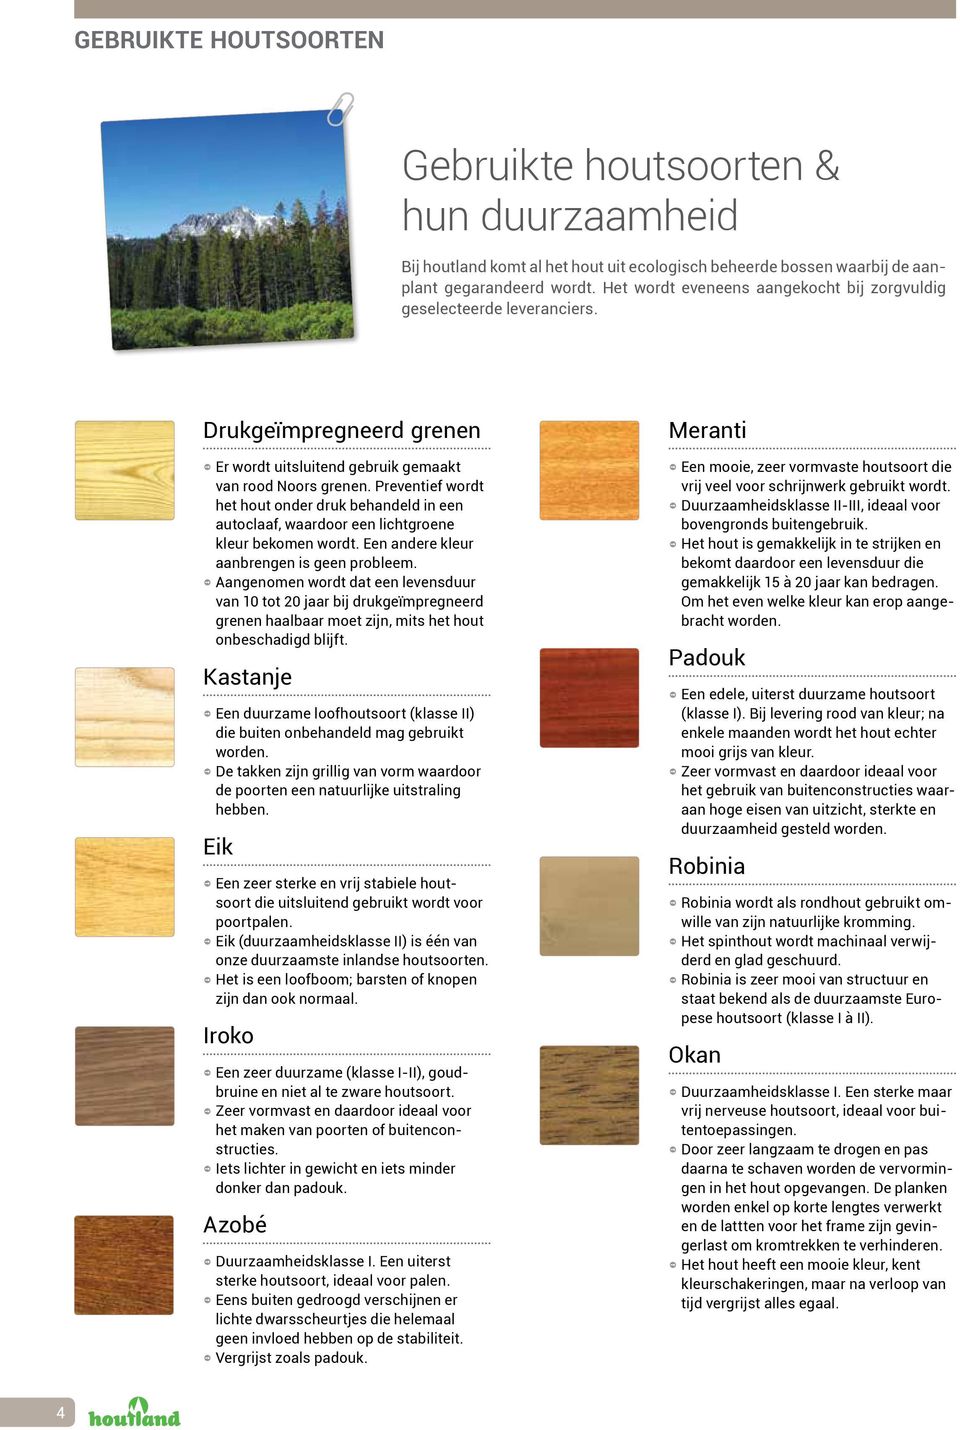 Preventief wordt het hout onder druk behandeld in een autoclaaf, waardoor een lichtgroene kleur bekomen wordt. Een andere kleur aanbrengen is geen probleem.